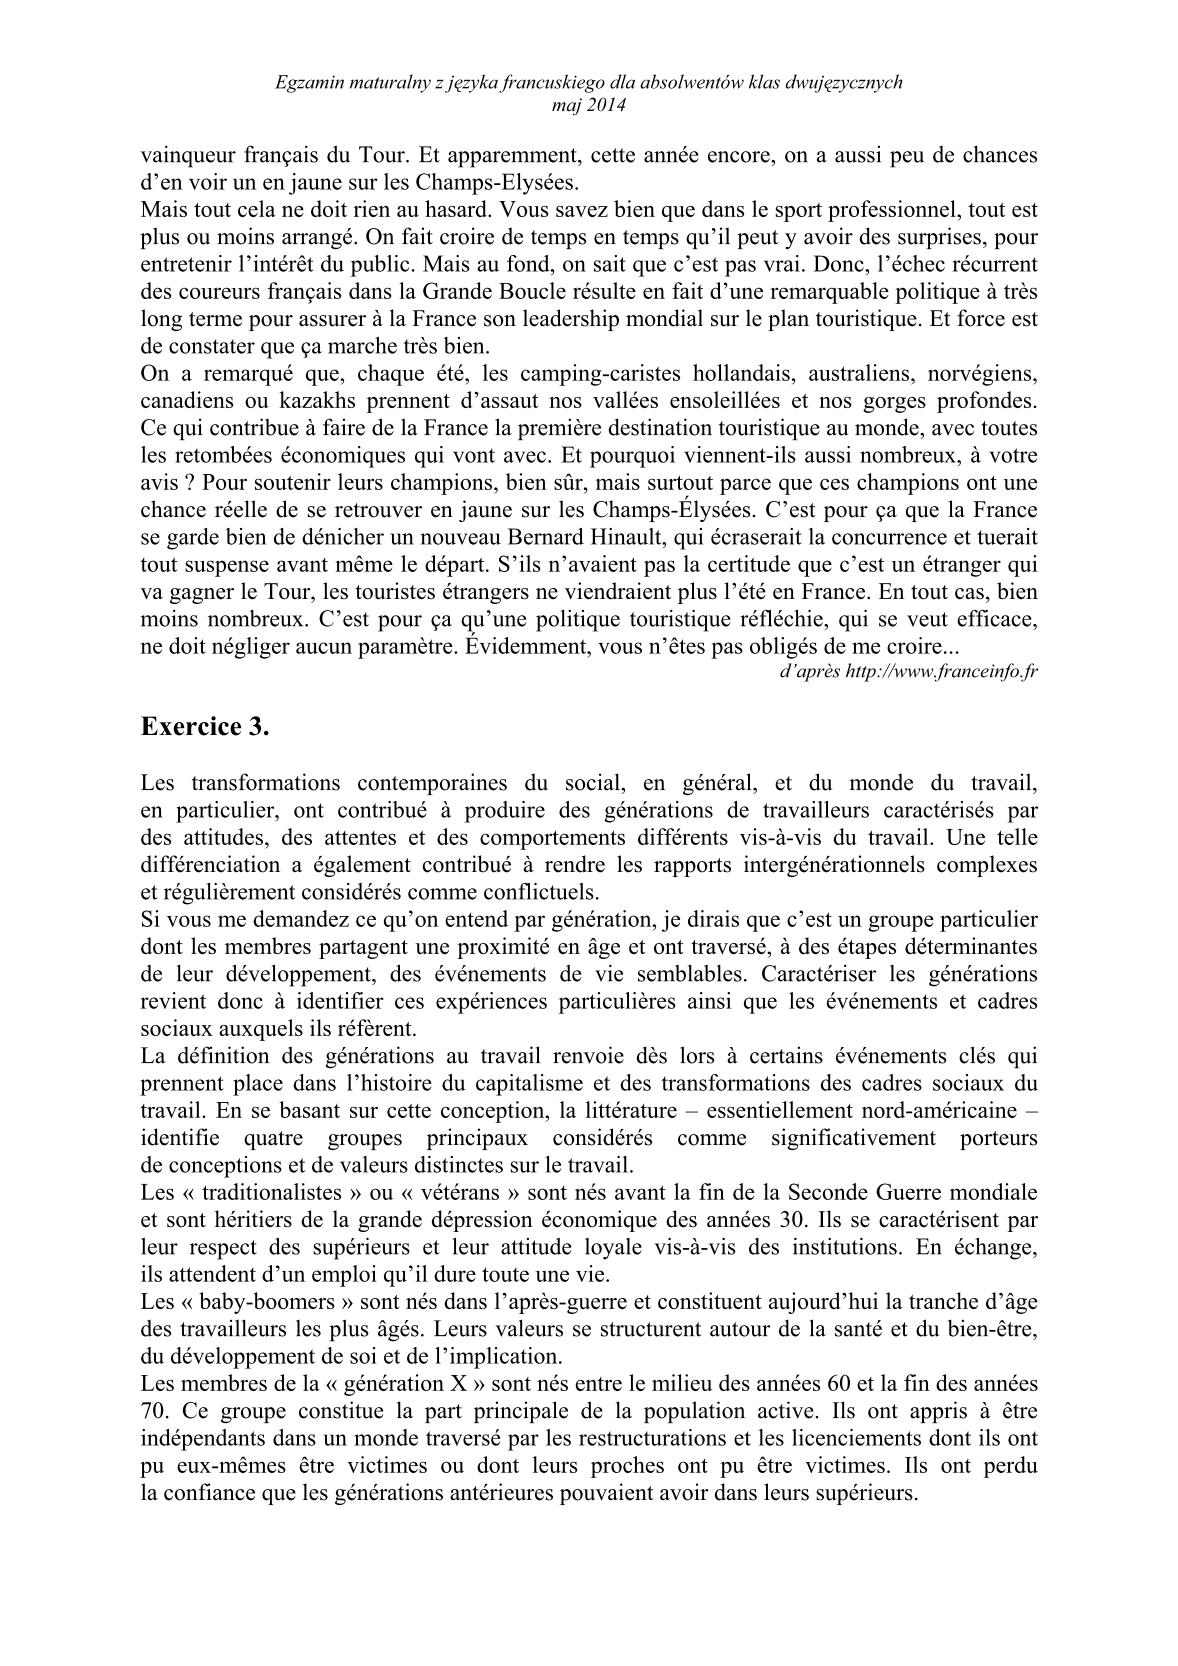 transkrypcja-jezyk-francuski-dla-absolwentow-klas-dwujezycznych-matura-2014-str.3